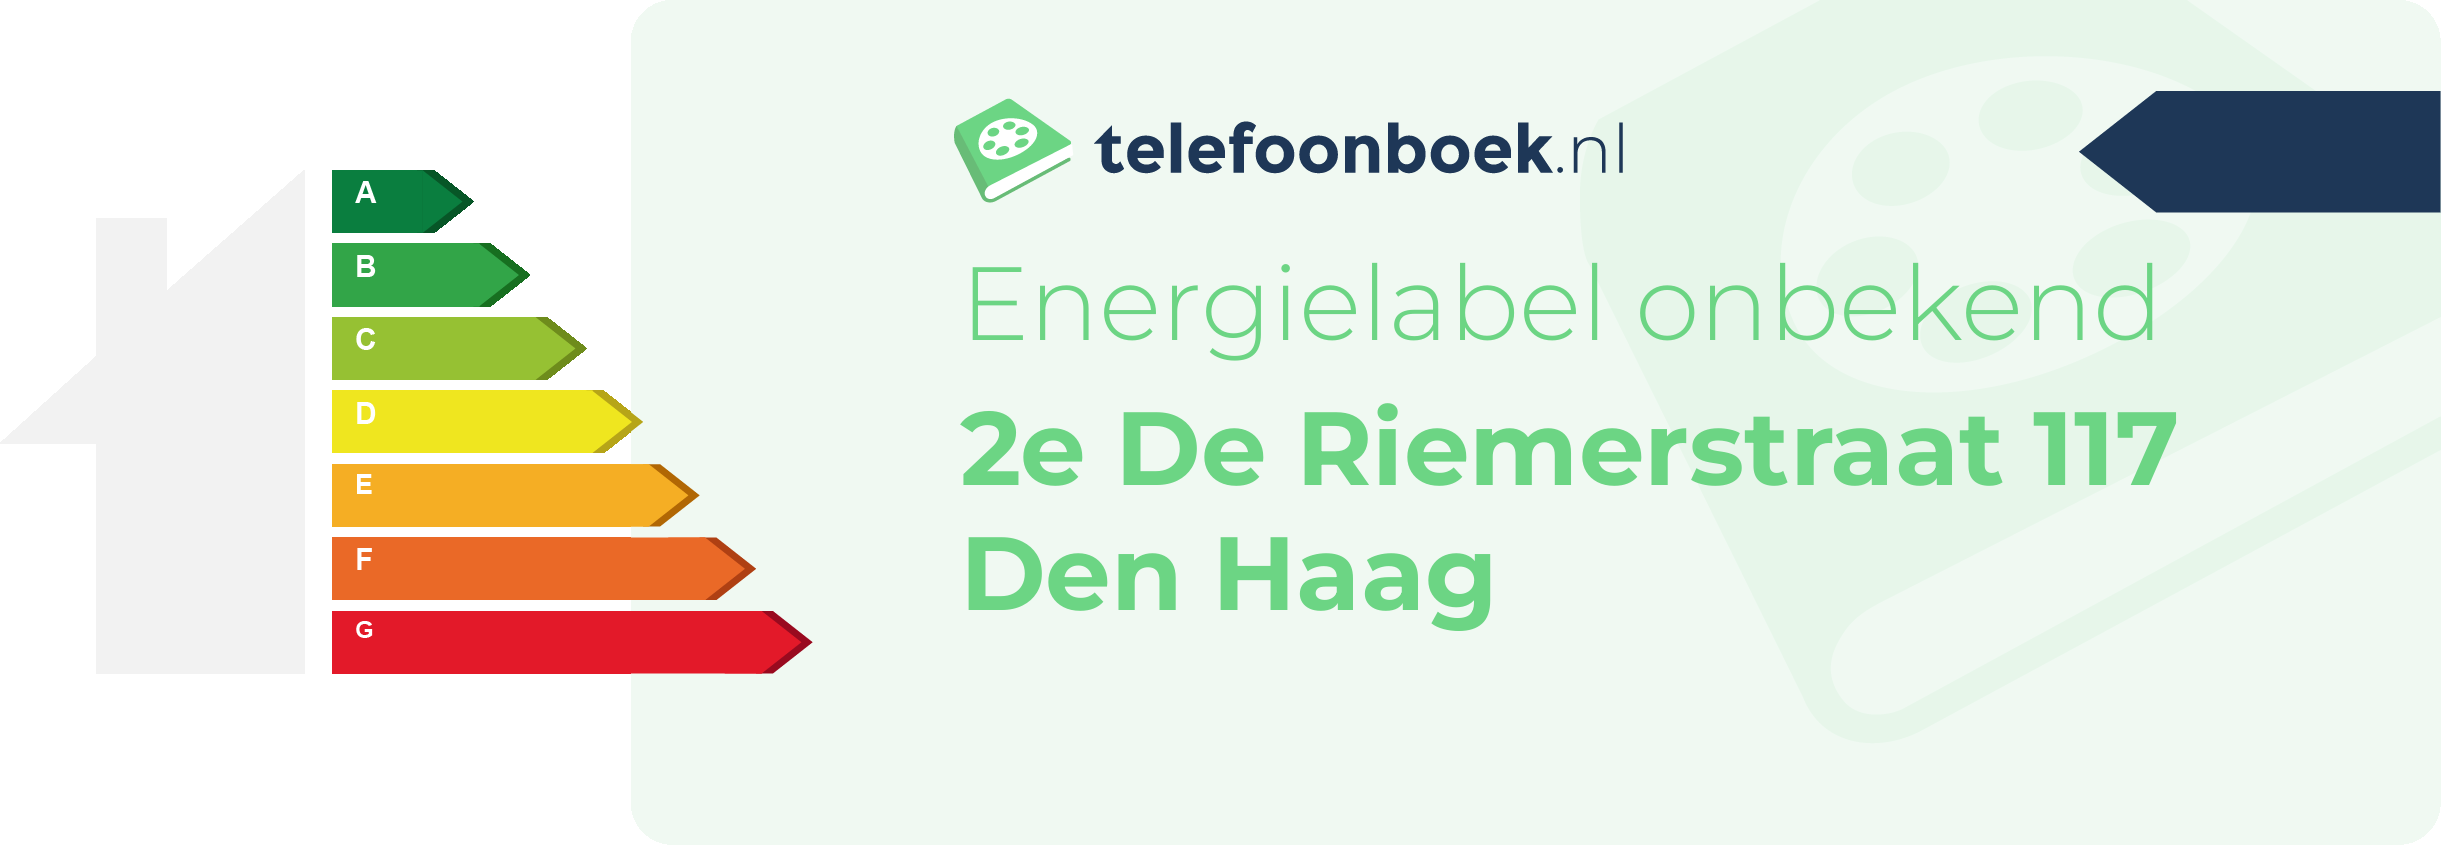 Energielabel 2e De Riemerstraat 117 Den Haag